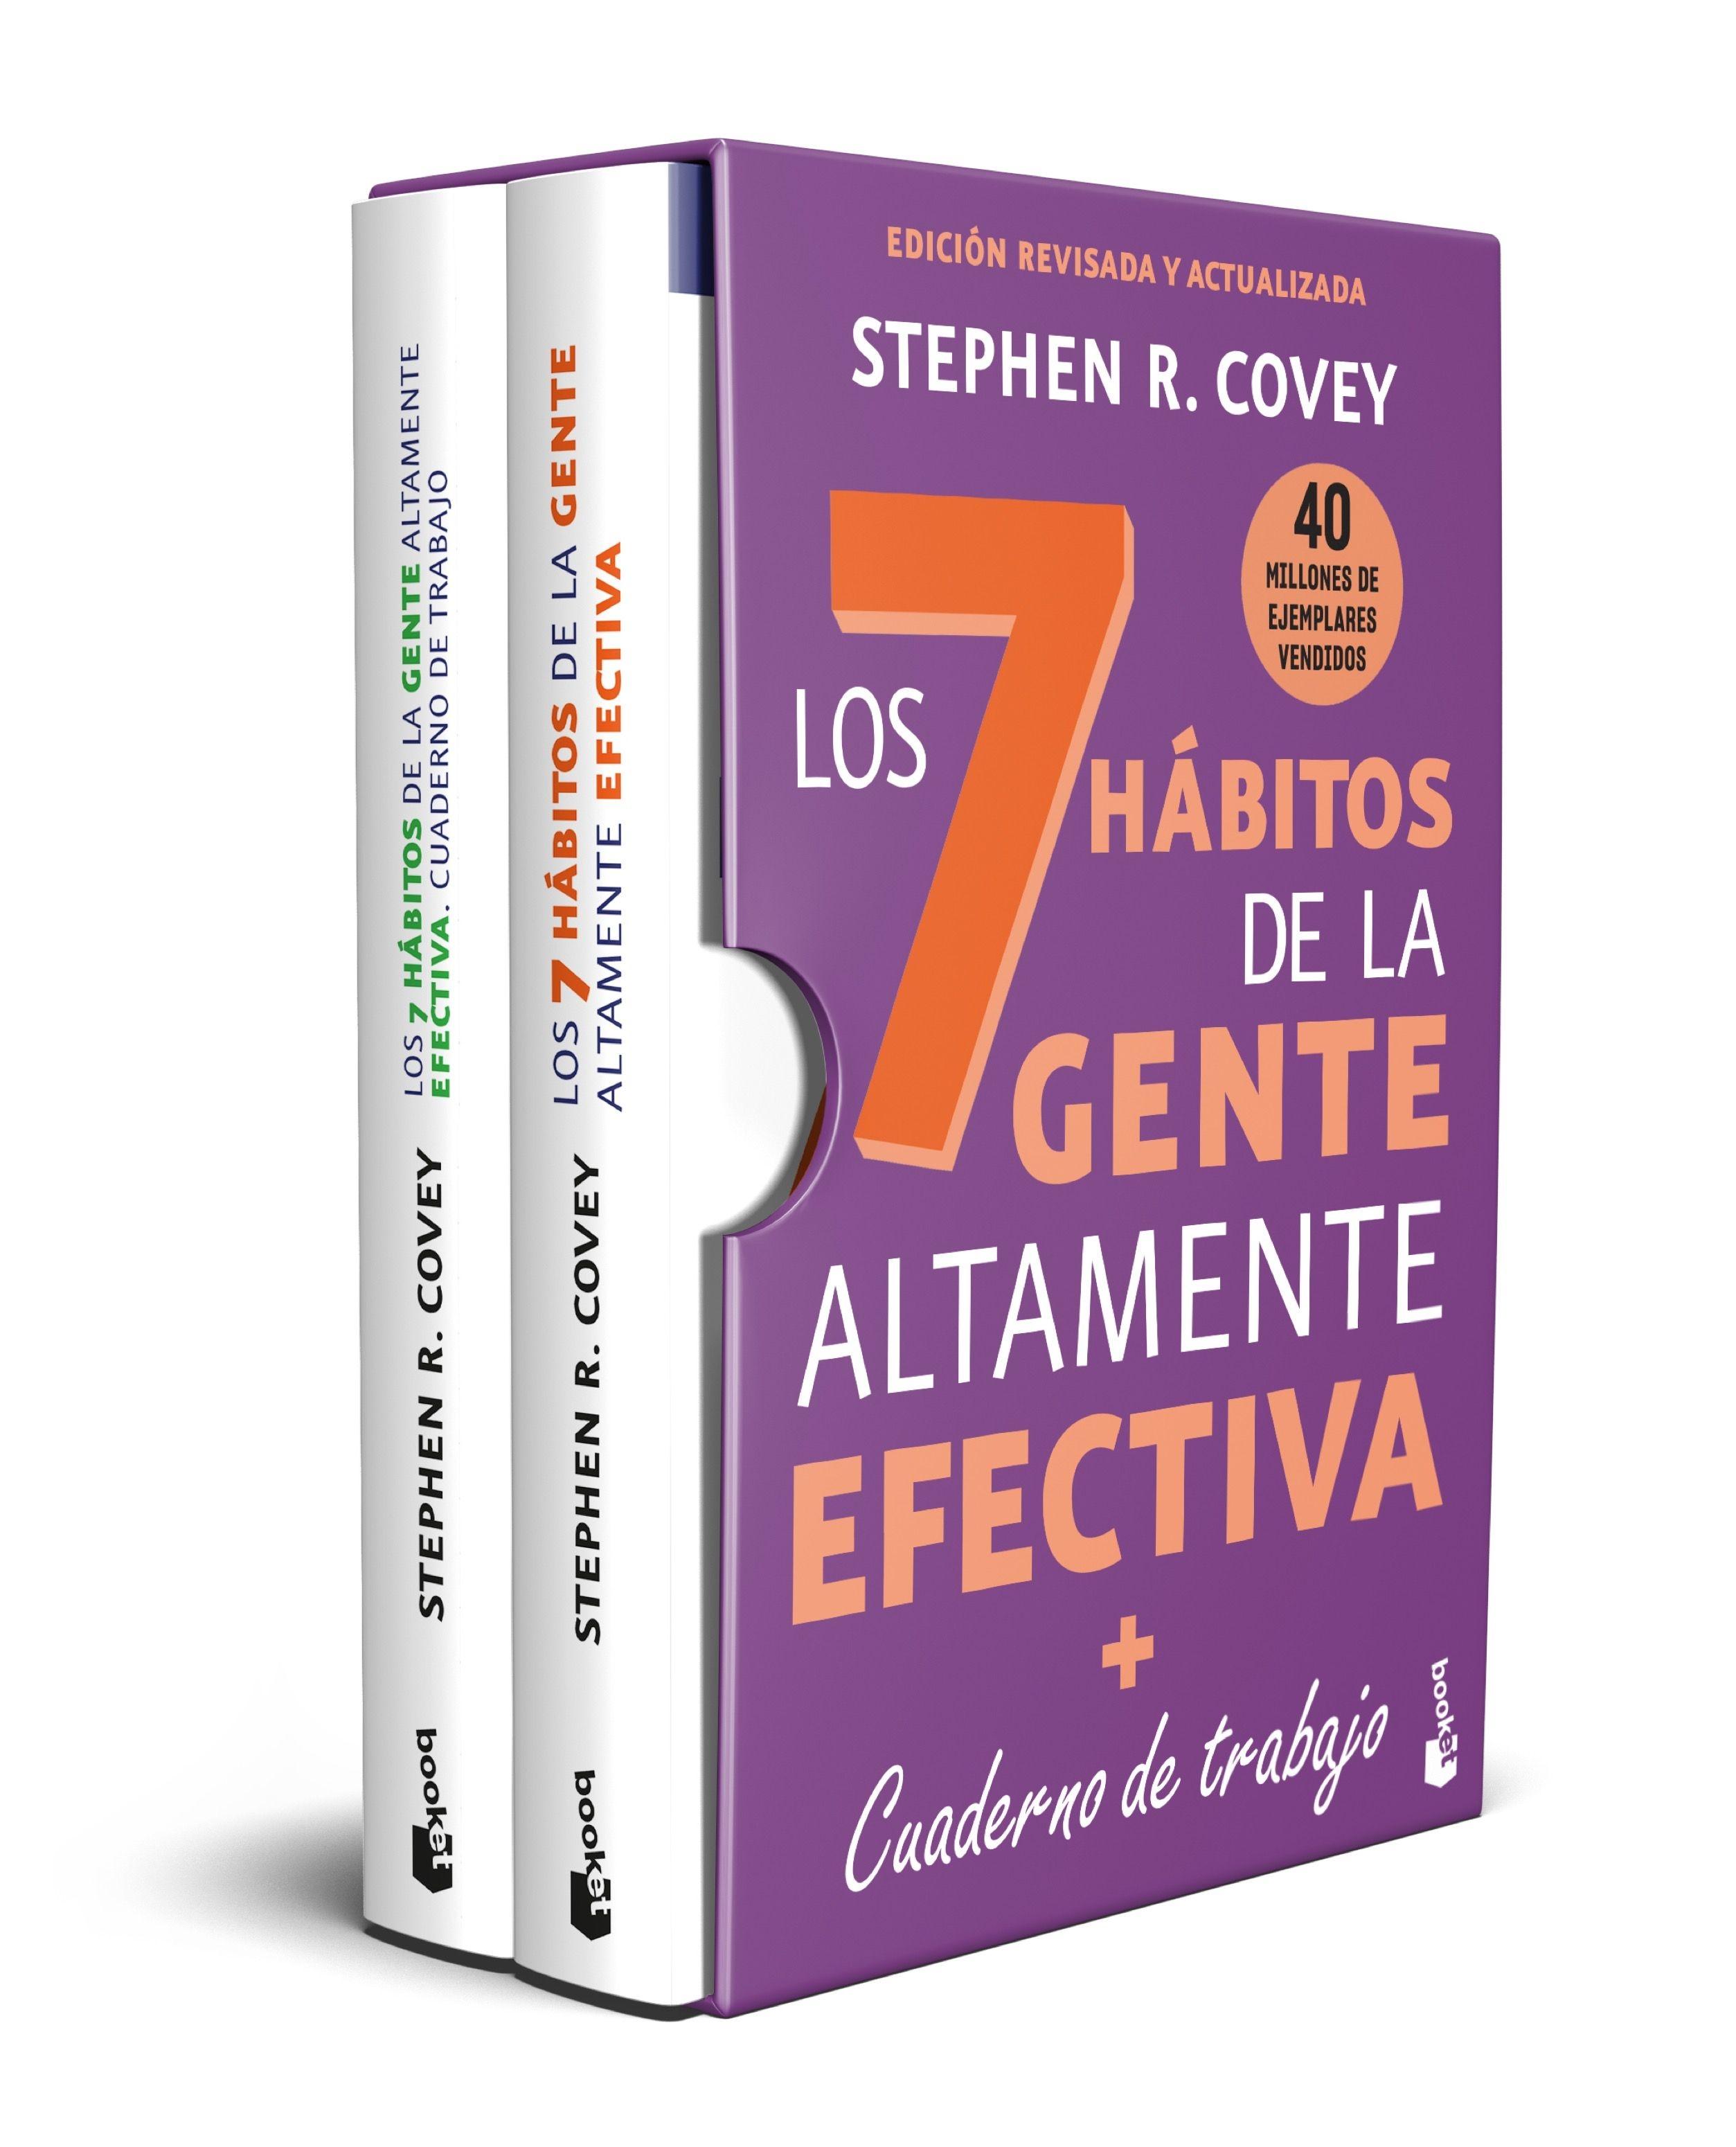 Estuche Los 7 hábitos de la gente altamente efectiva "Los 7 hábitos de la gente altamente efectiva + Cuaderno de trabajo"